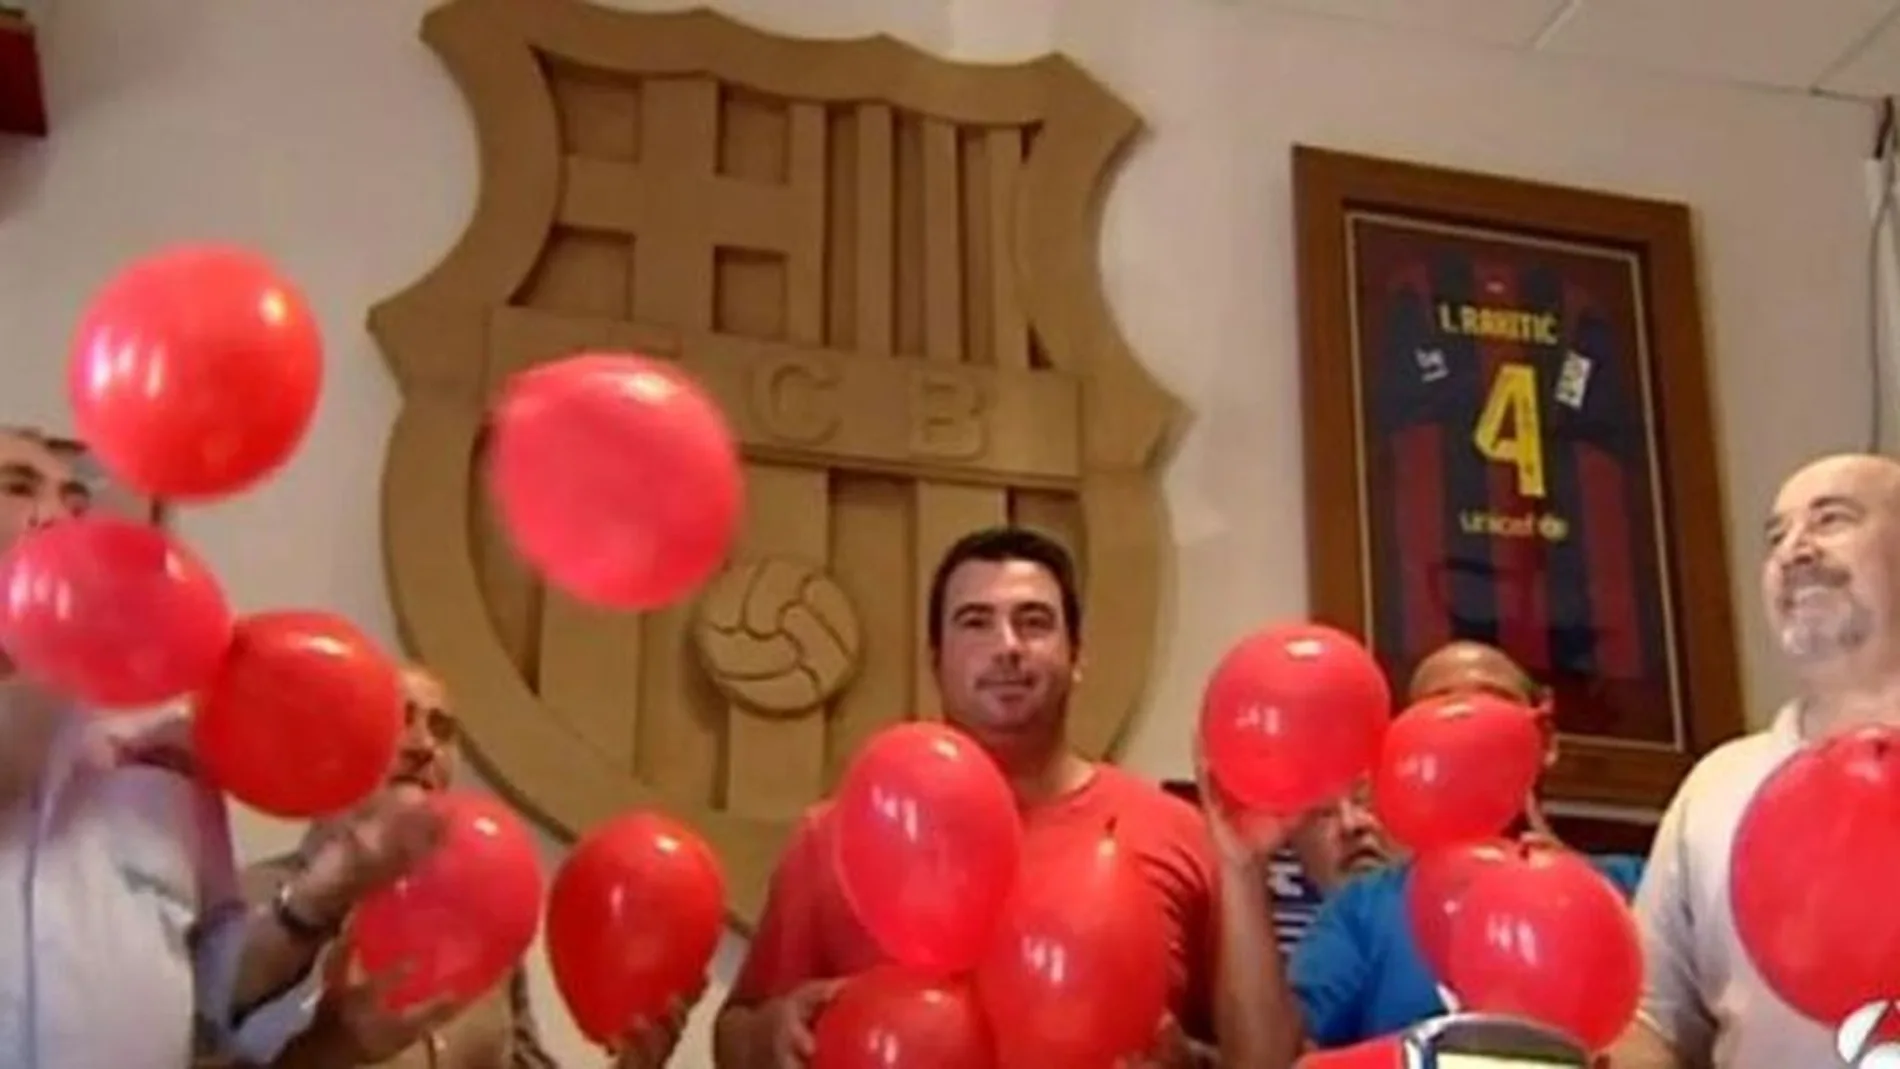 Peña del Barça en Utrera (Sevilla) con globos rojos